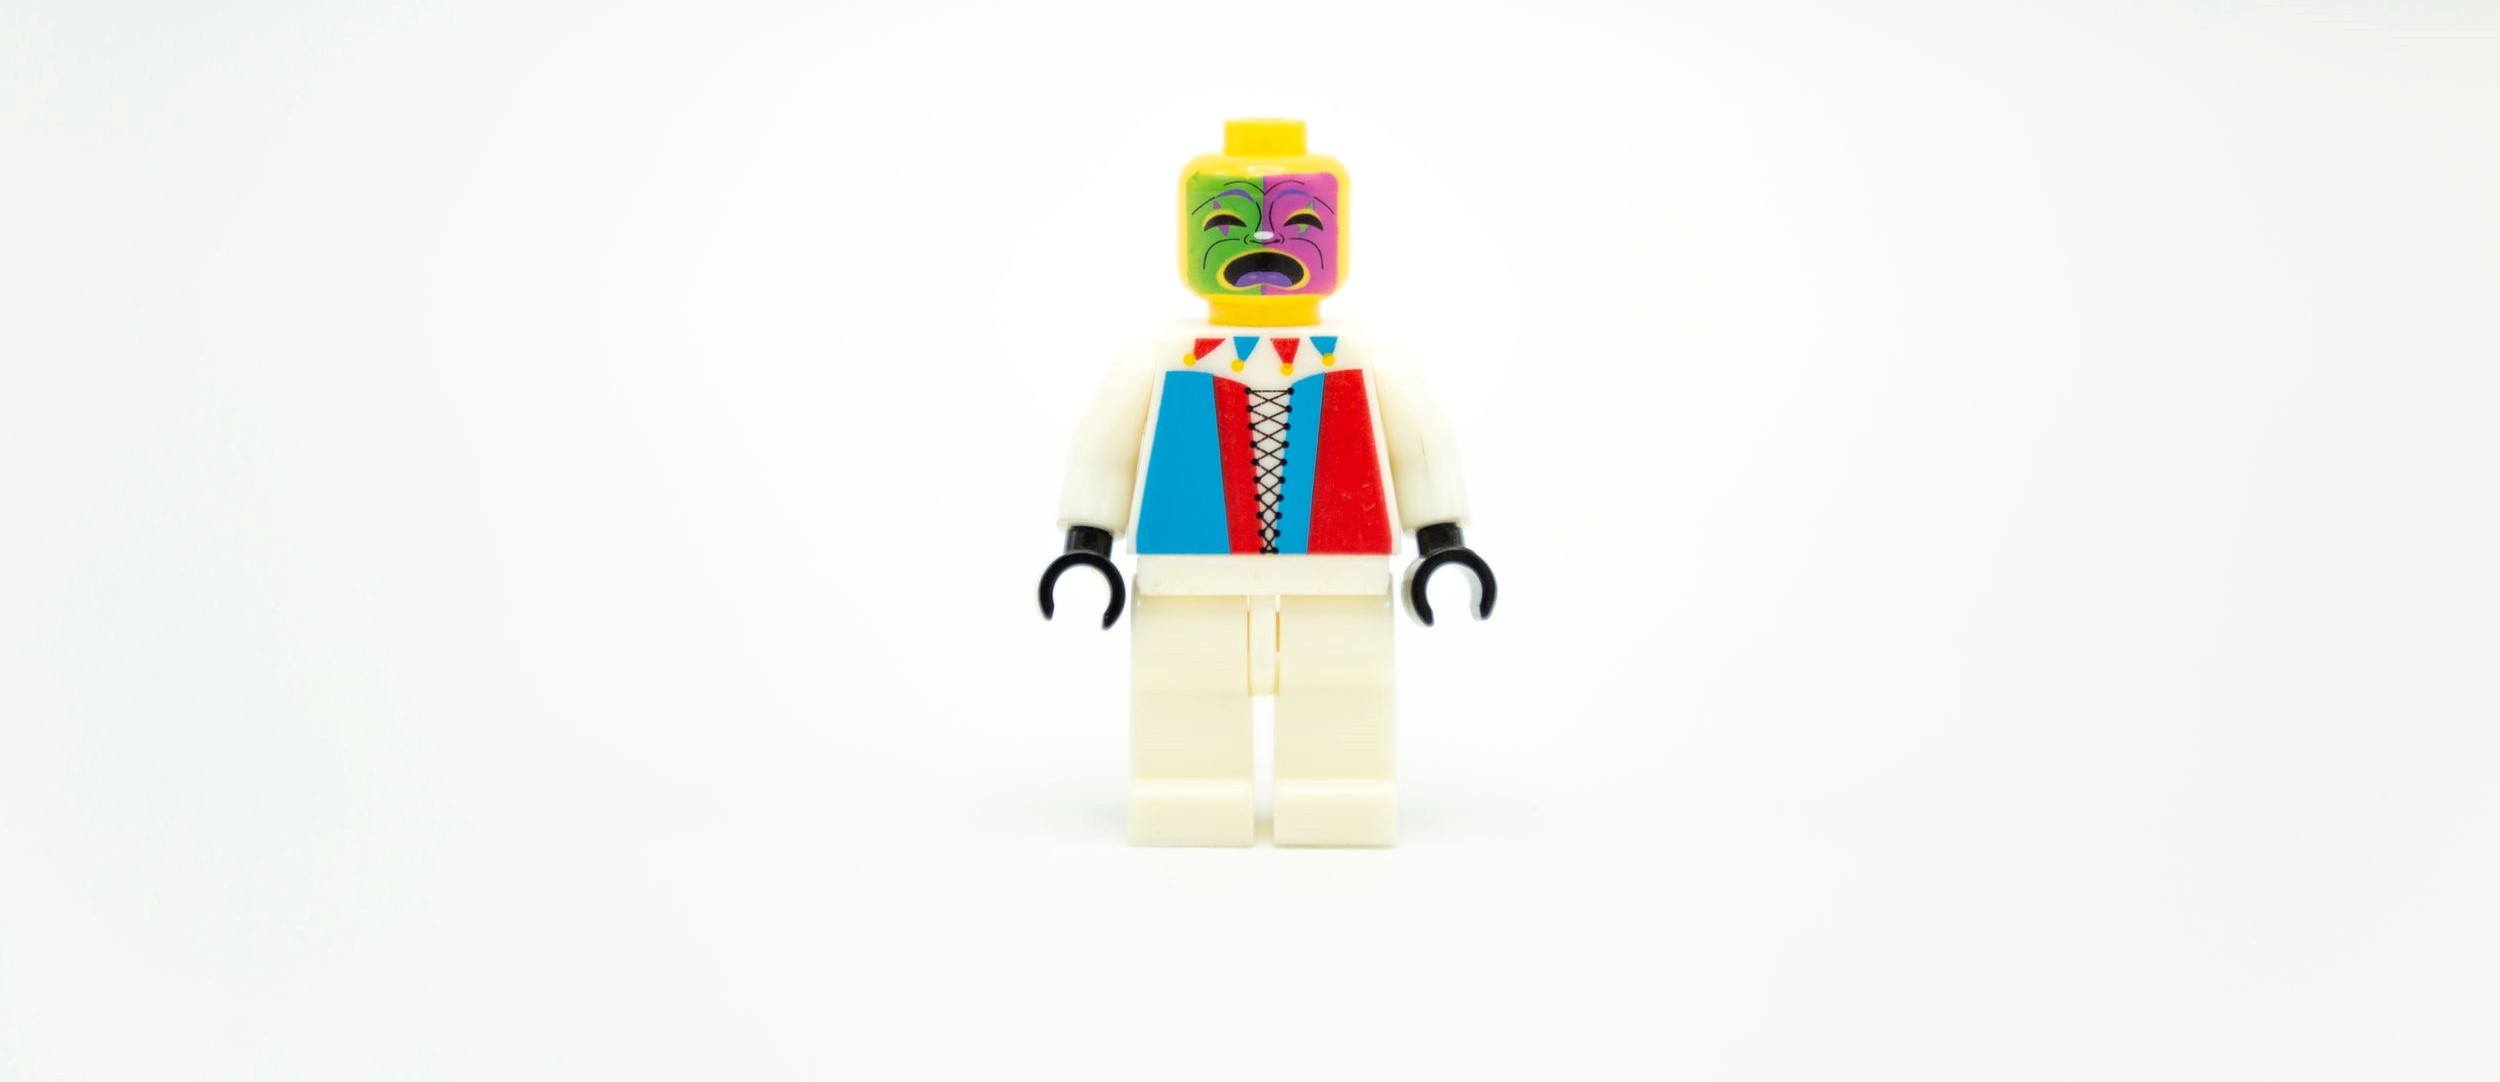 clown lego minifigures toy on white background .